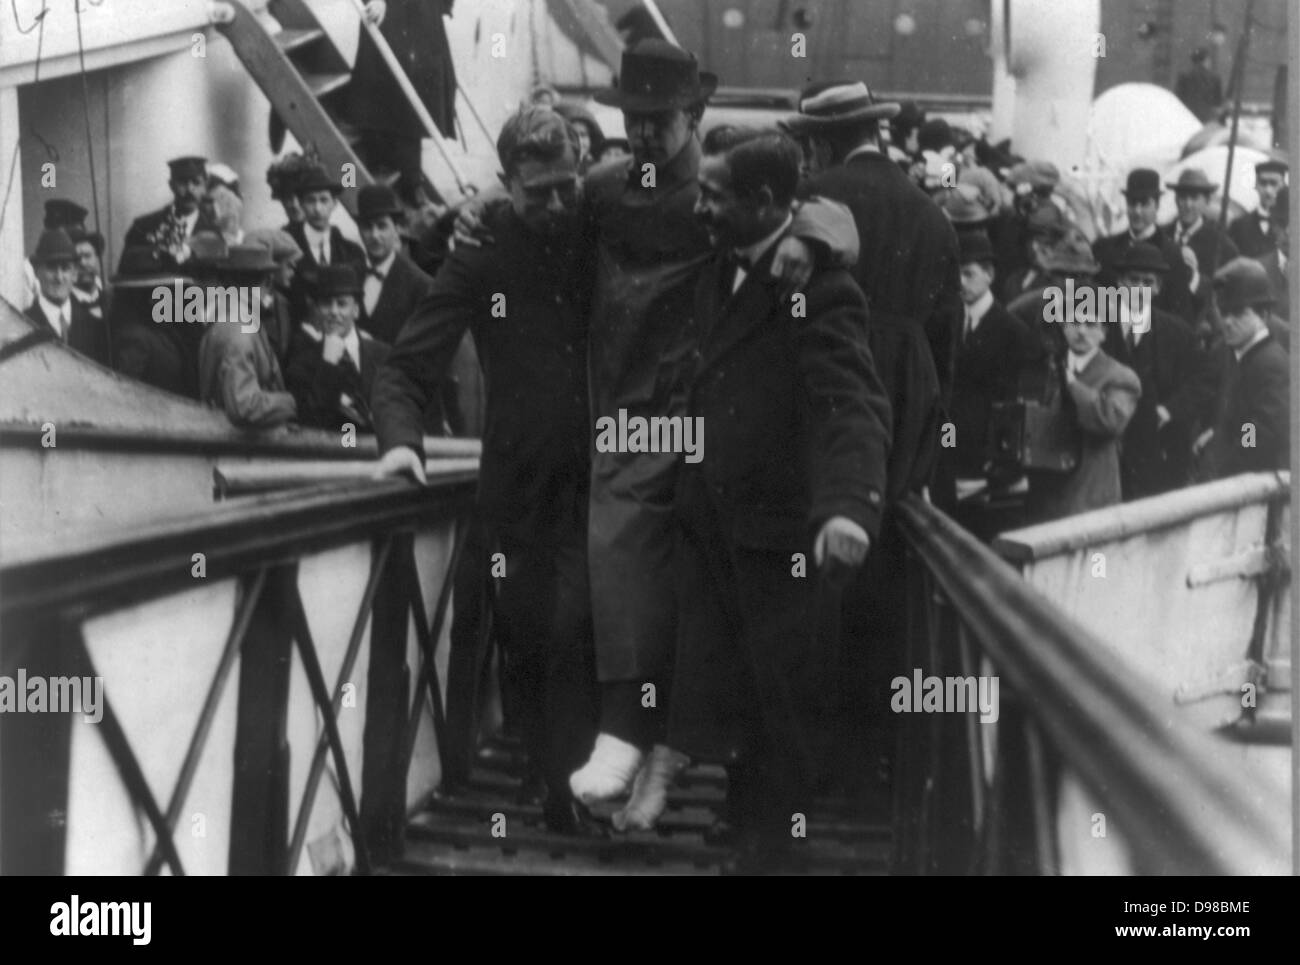 Harold sposa, superstite operatore wireless del Titanic, con piedi bendati, essendo portati fino rampa della nave]. Data di creazione/Pubblicato: c1912 27 maggio. Media: 1 stampa fotografica. Foto Stock